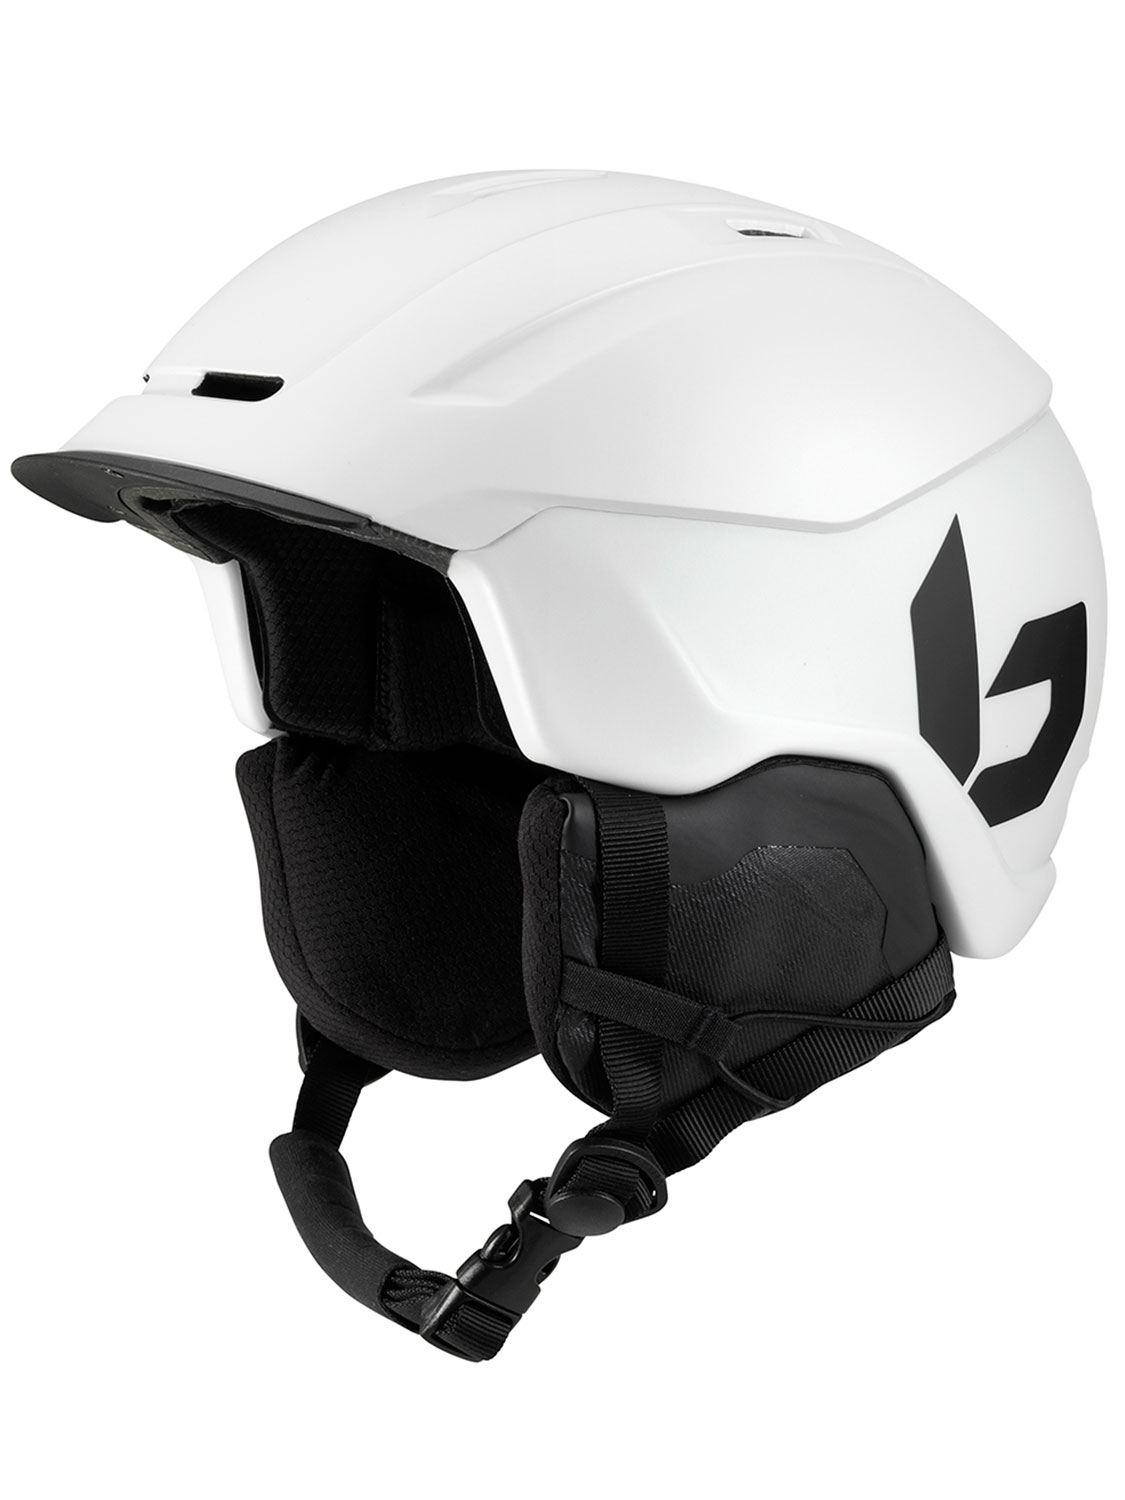 Bolle Instinct 2.0 Mips Helmet White - Size: 54-58